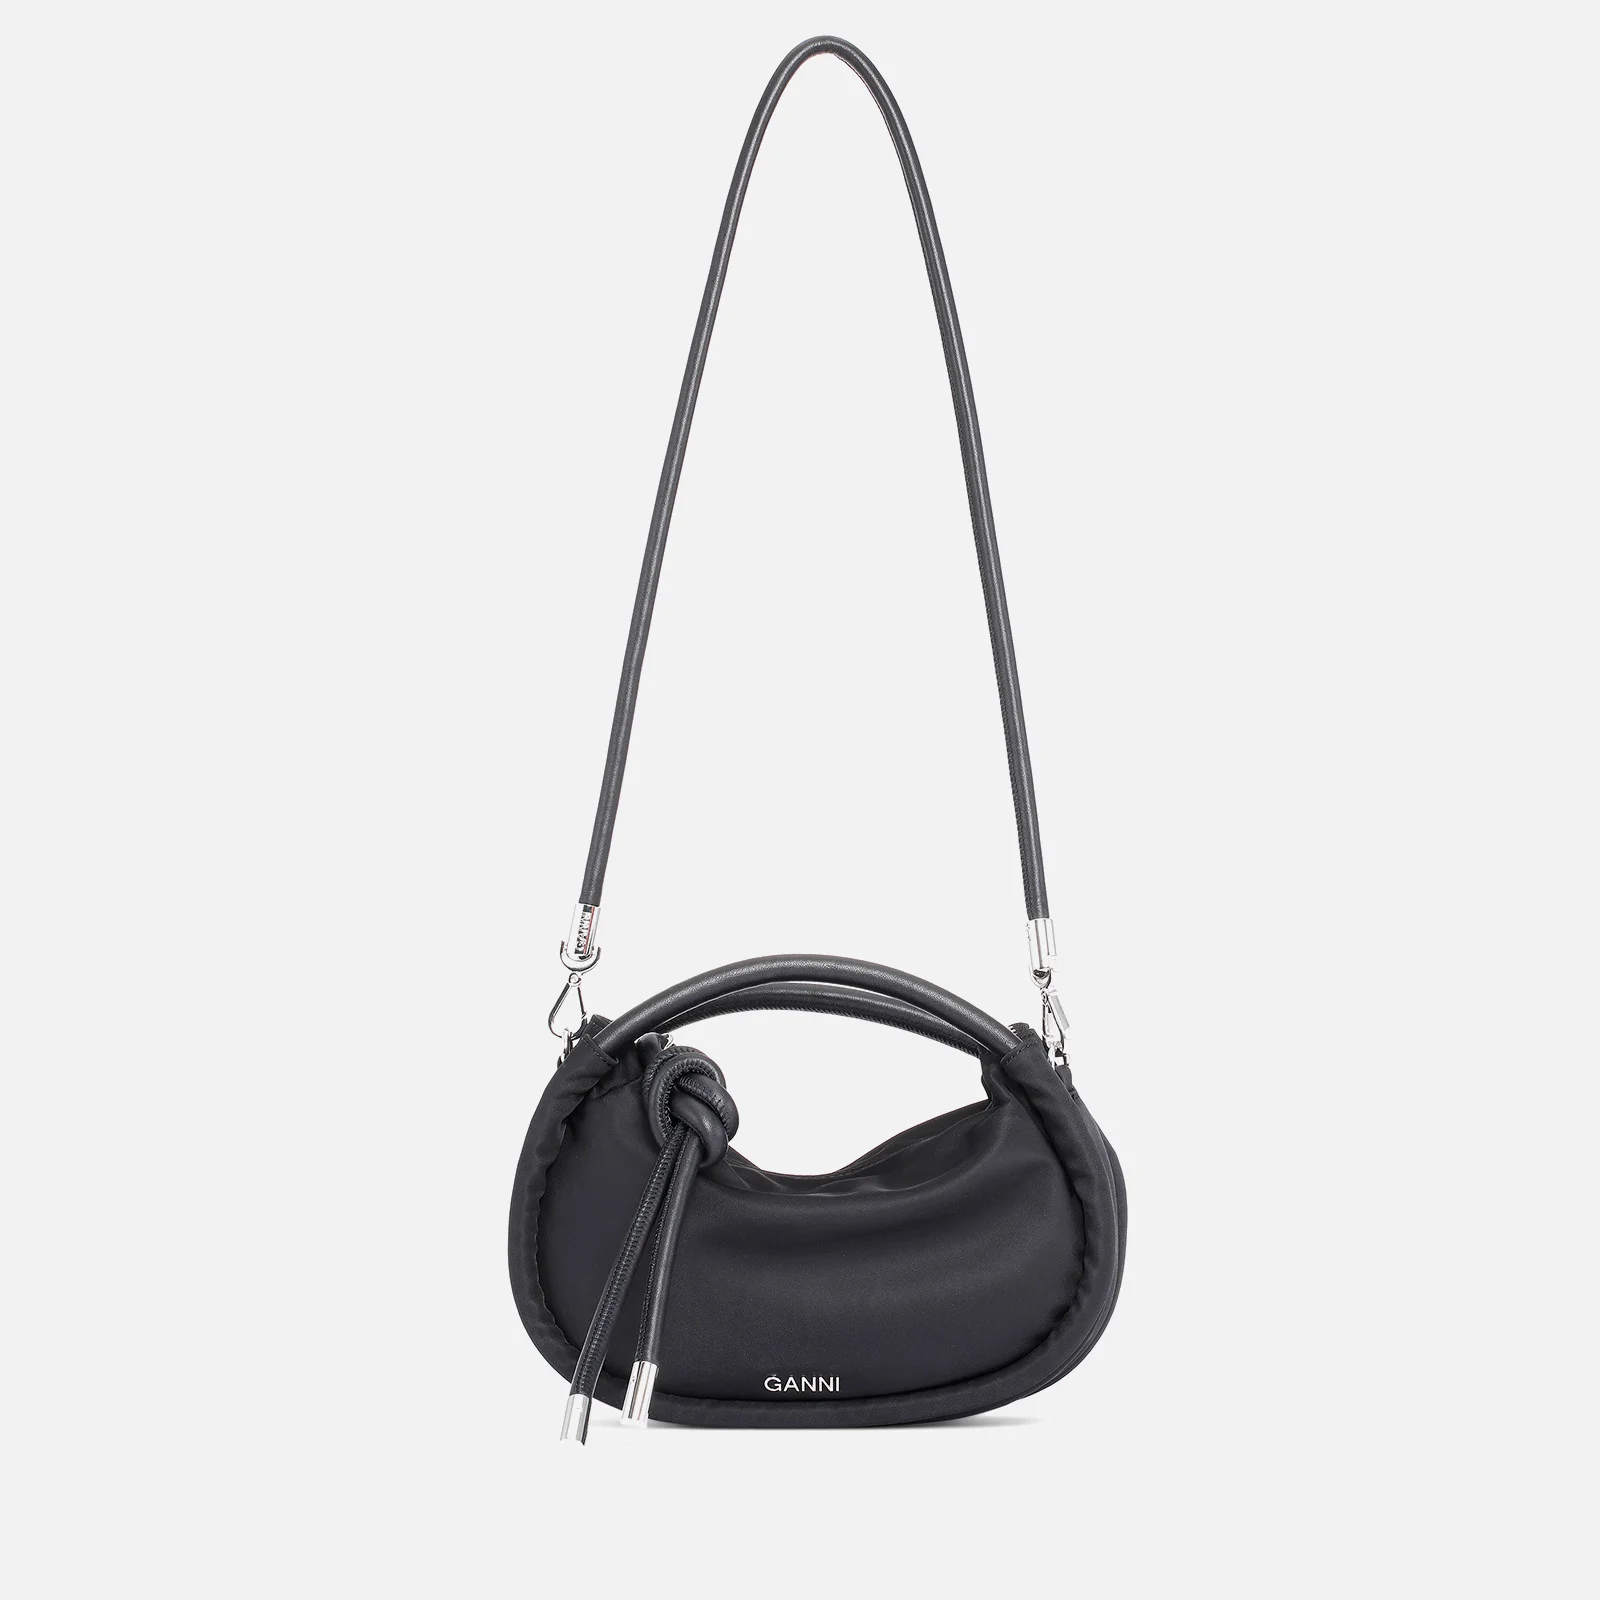 Ganni Women's Knot Mini Bag - Black Image 1